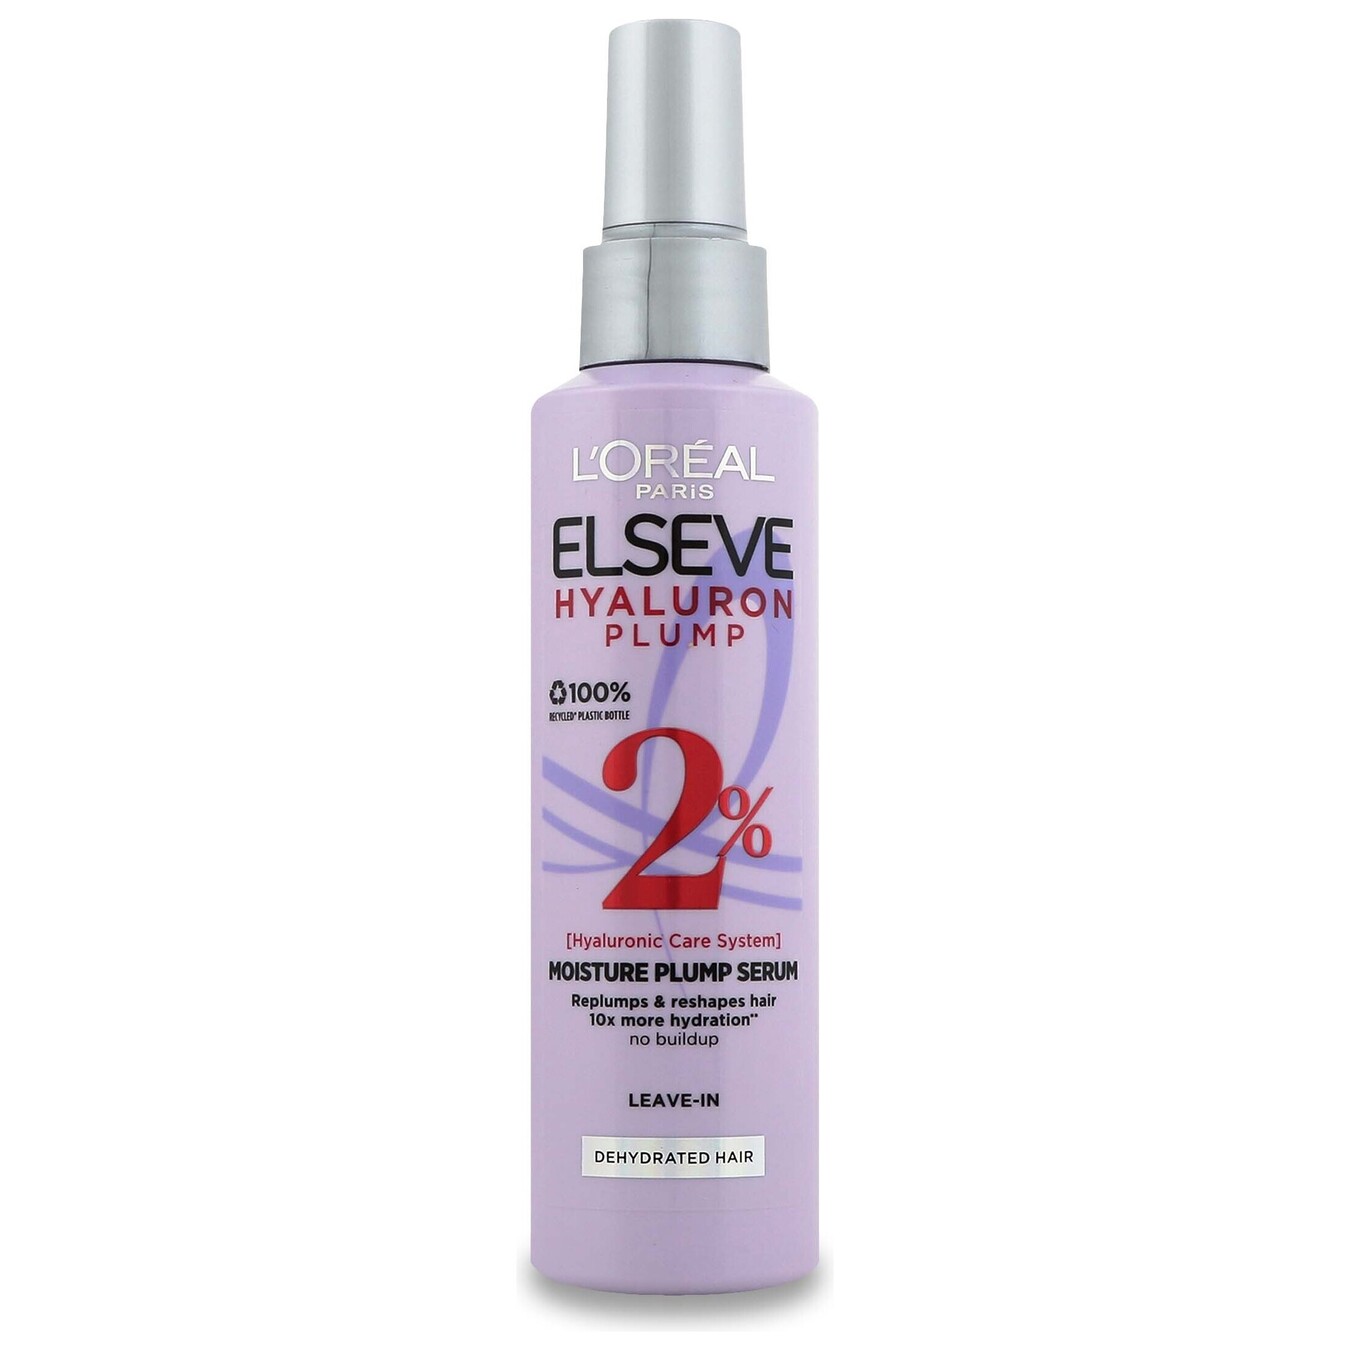 Serum-filler Elseve Hyaluron Plump for hair moisturizing and volume 150 ml